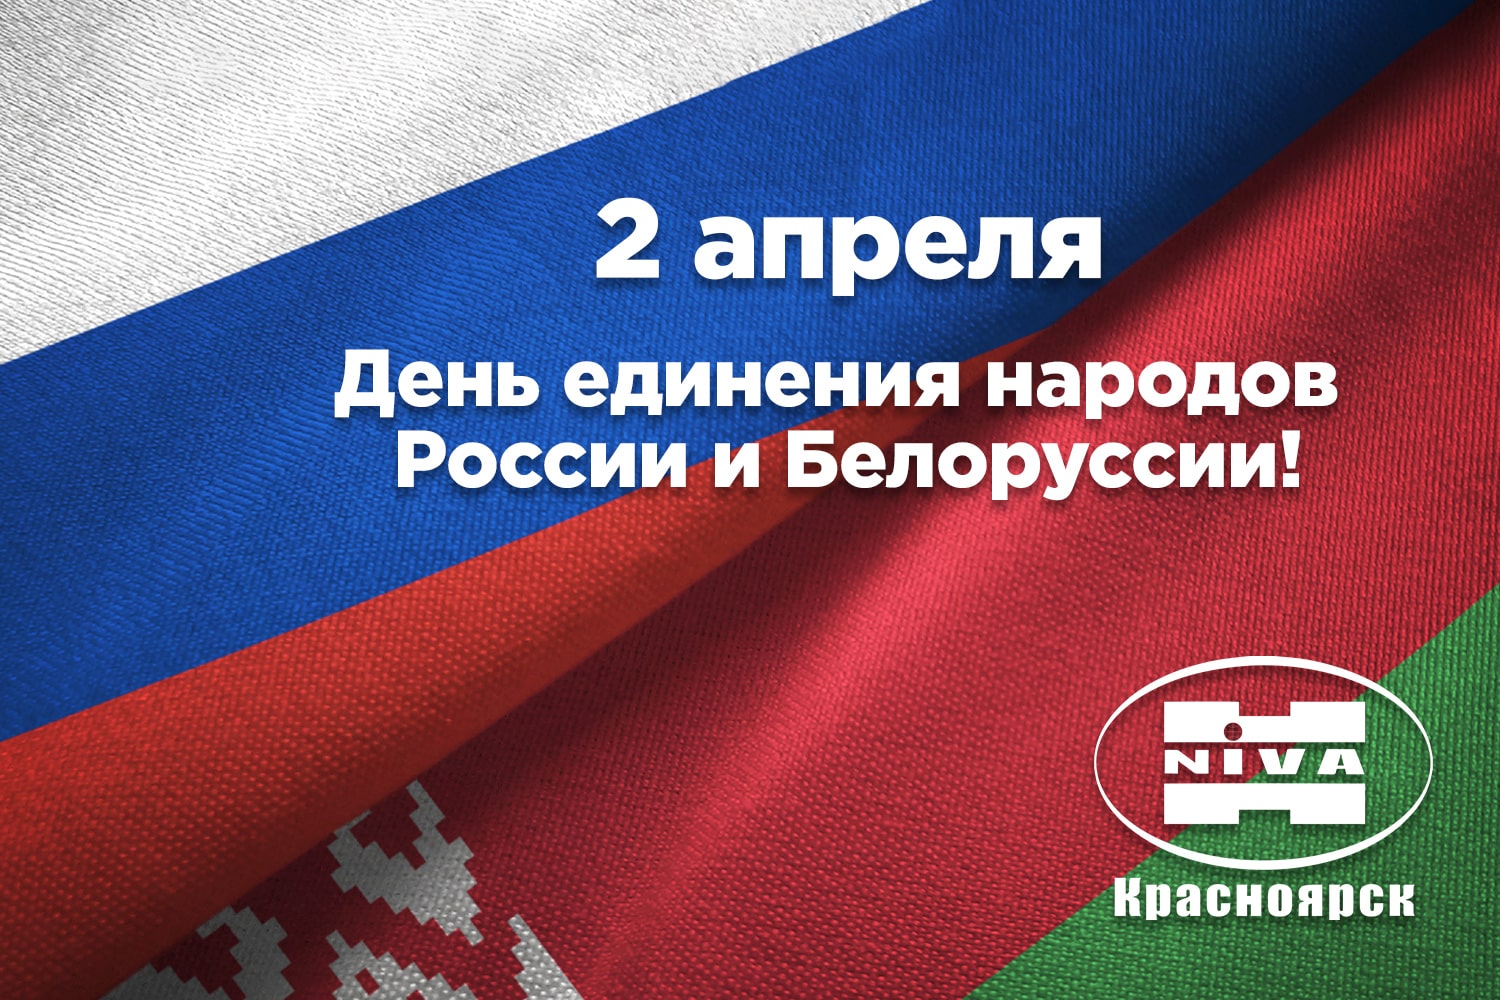 С Днём единения народов России и Белоруссии!